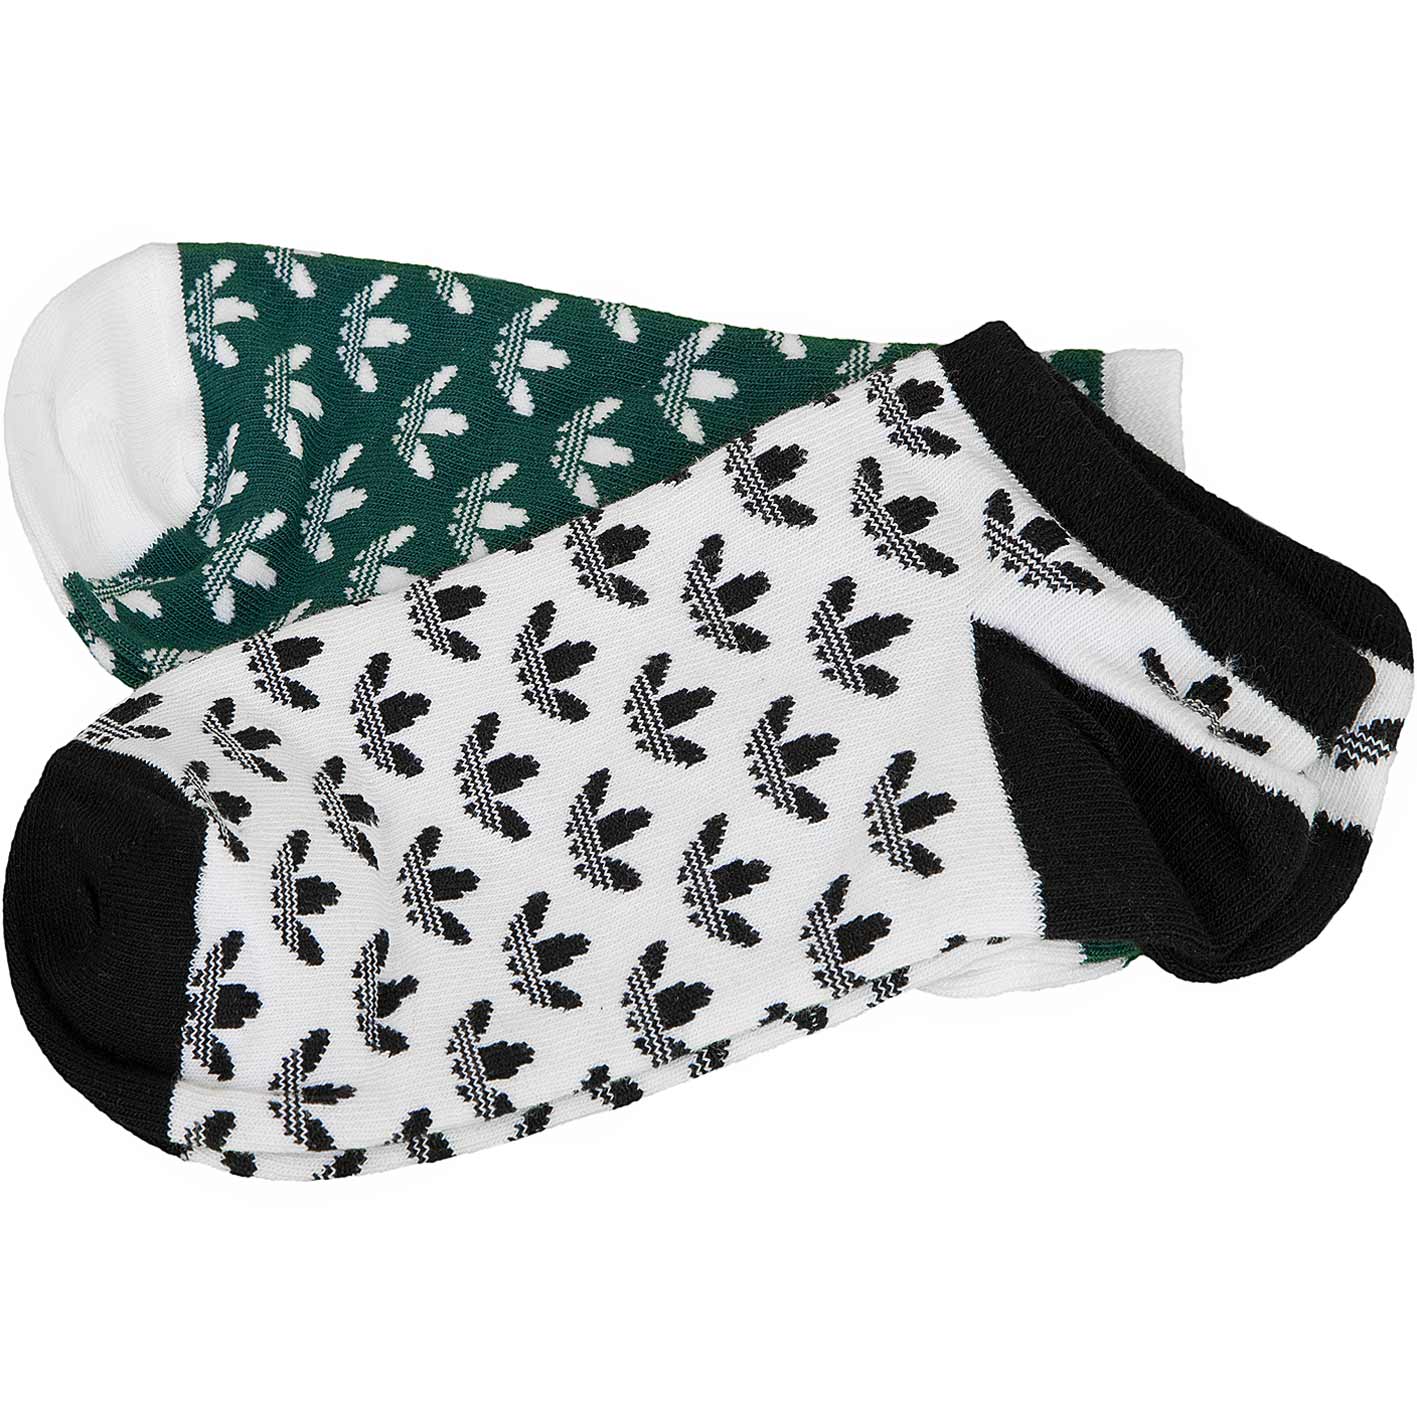 ☆ Adidas Originals Socken Trefoil Liner GR grün - hier bestellen!